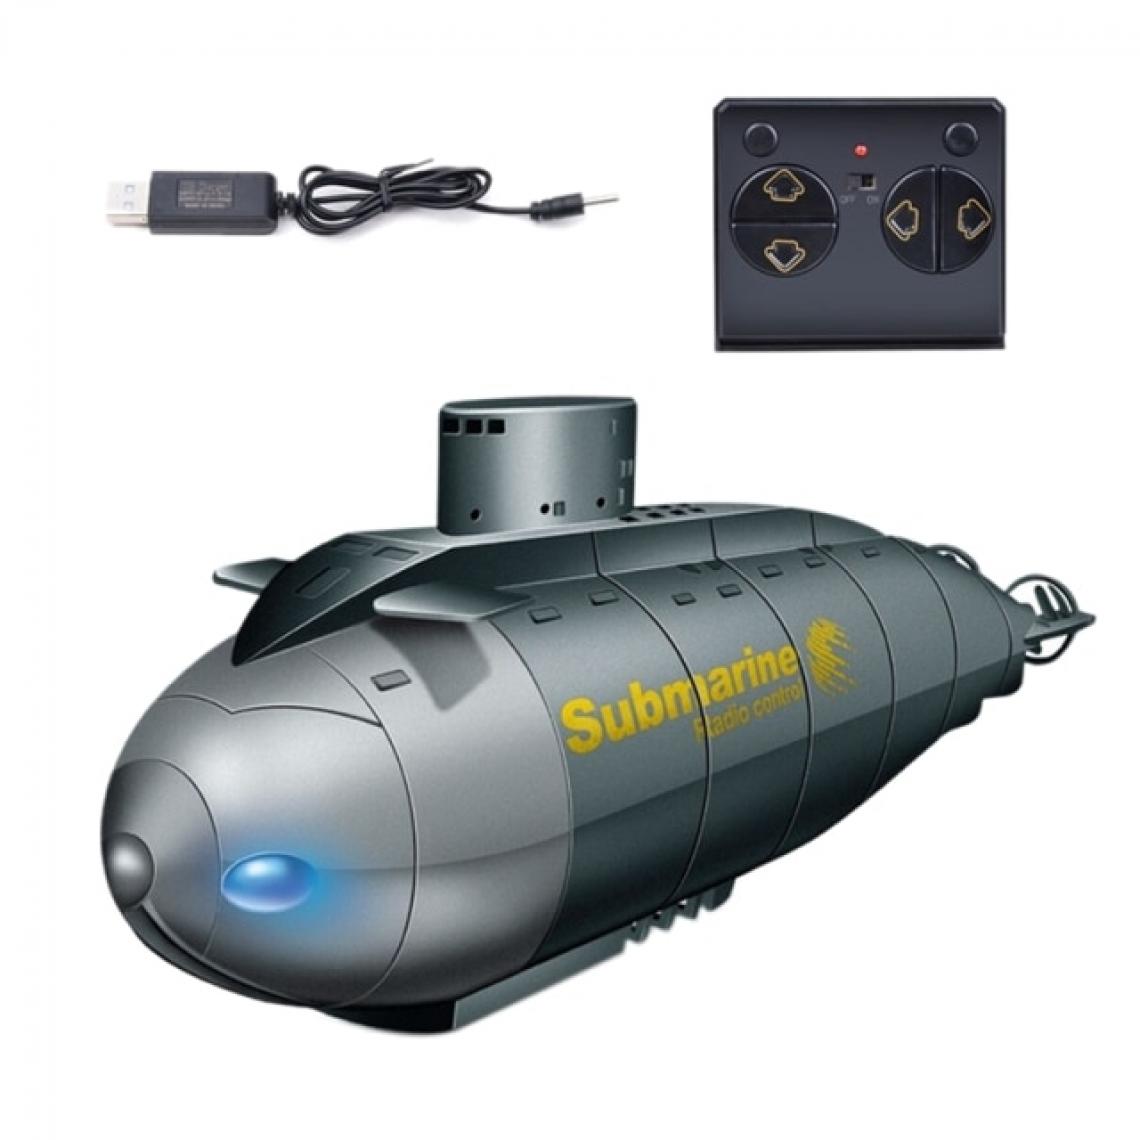 Universal - 6 canaux RC sous-marin modèle mini vitesse dans l'eau bateau télécommandé simulation cadeau jouet enfant | RC sous-marin(Bleu) - Bateaux RC